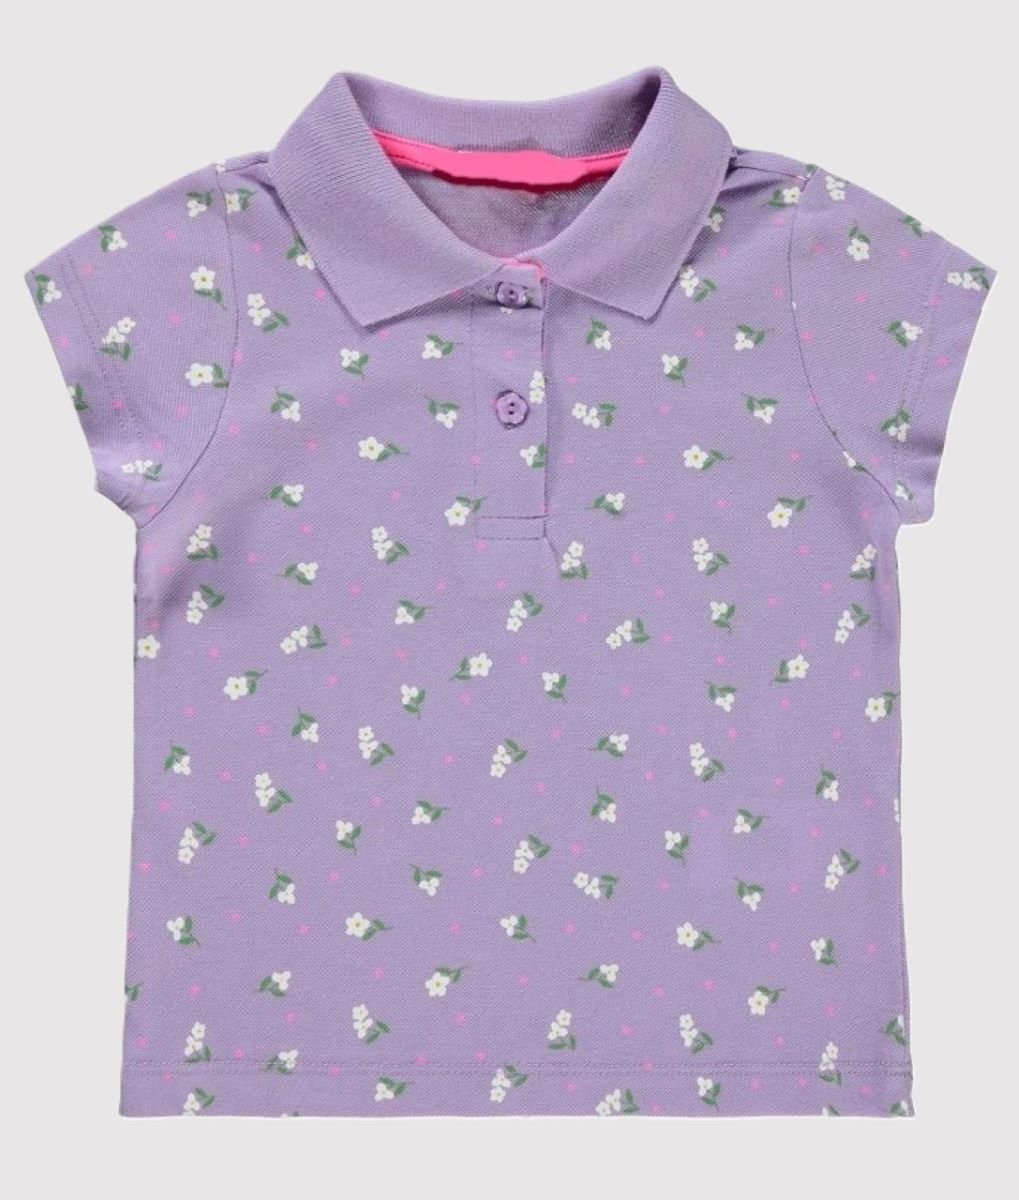 Polo μπλουζάκι με λουλούδια για κορίτσι (12μηνών-4 ετών)